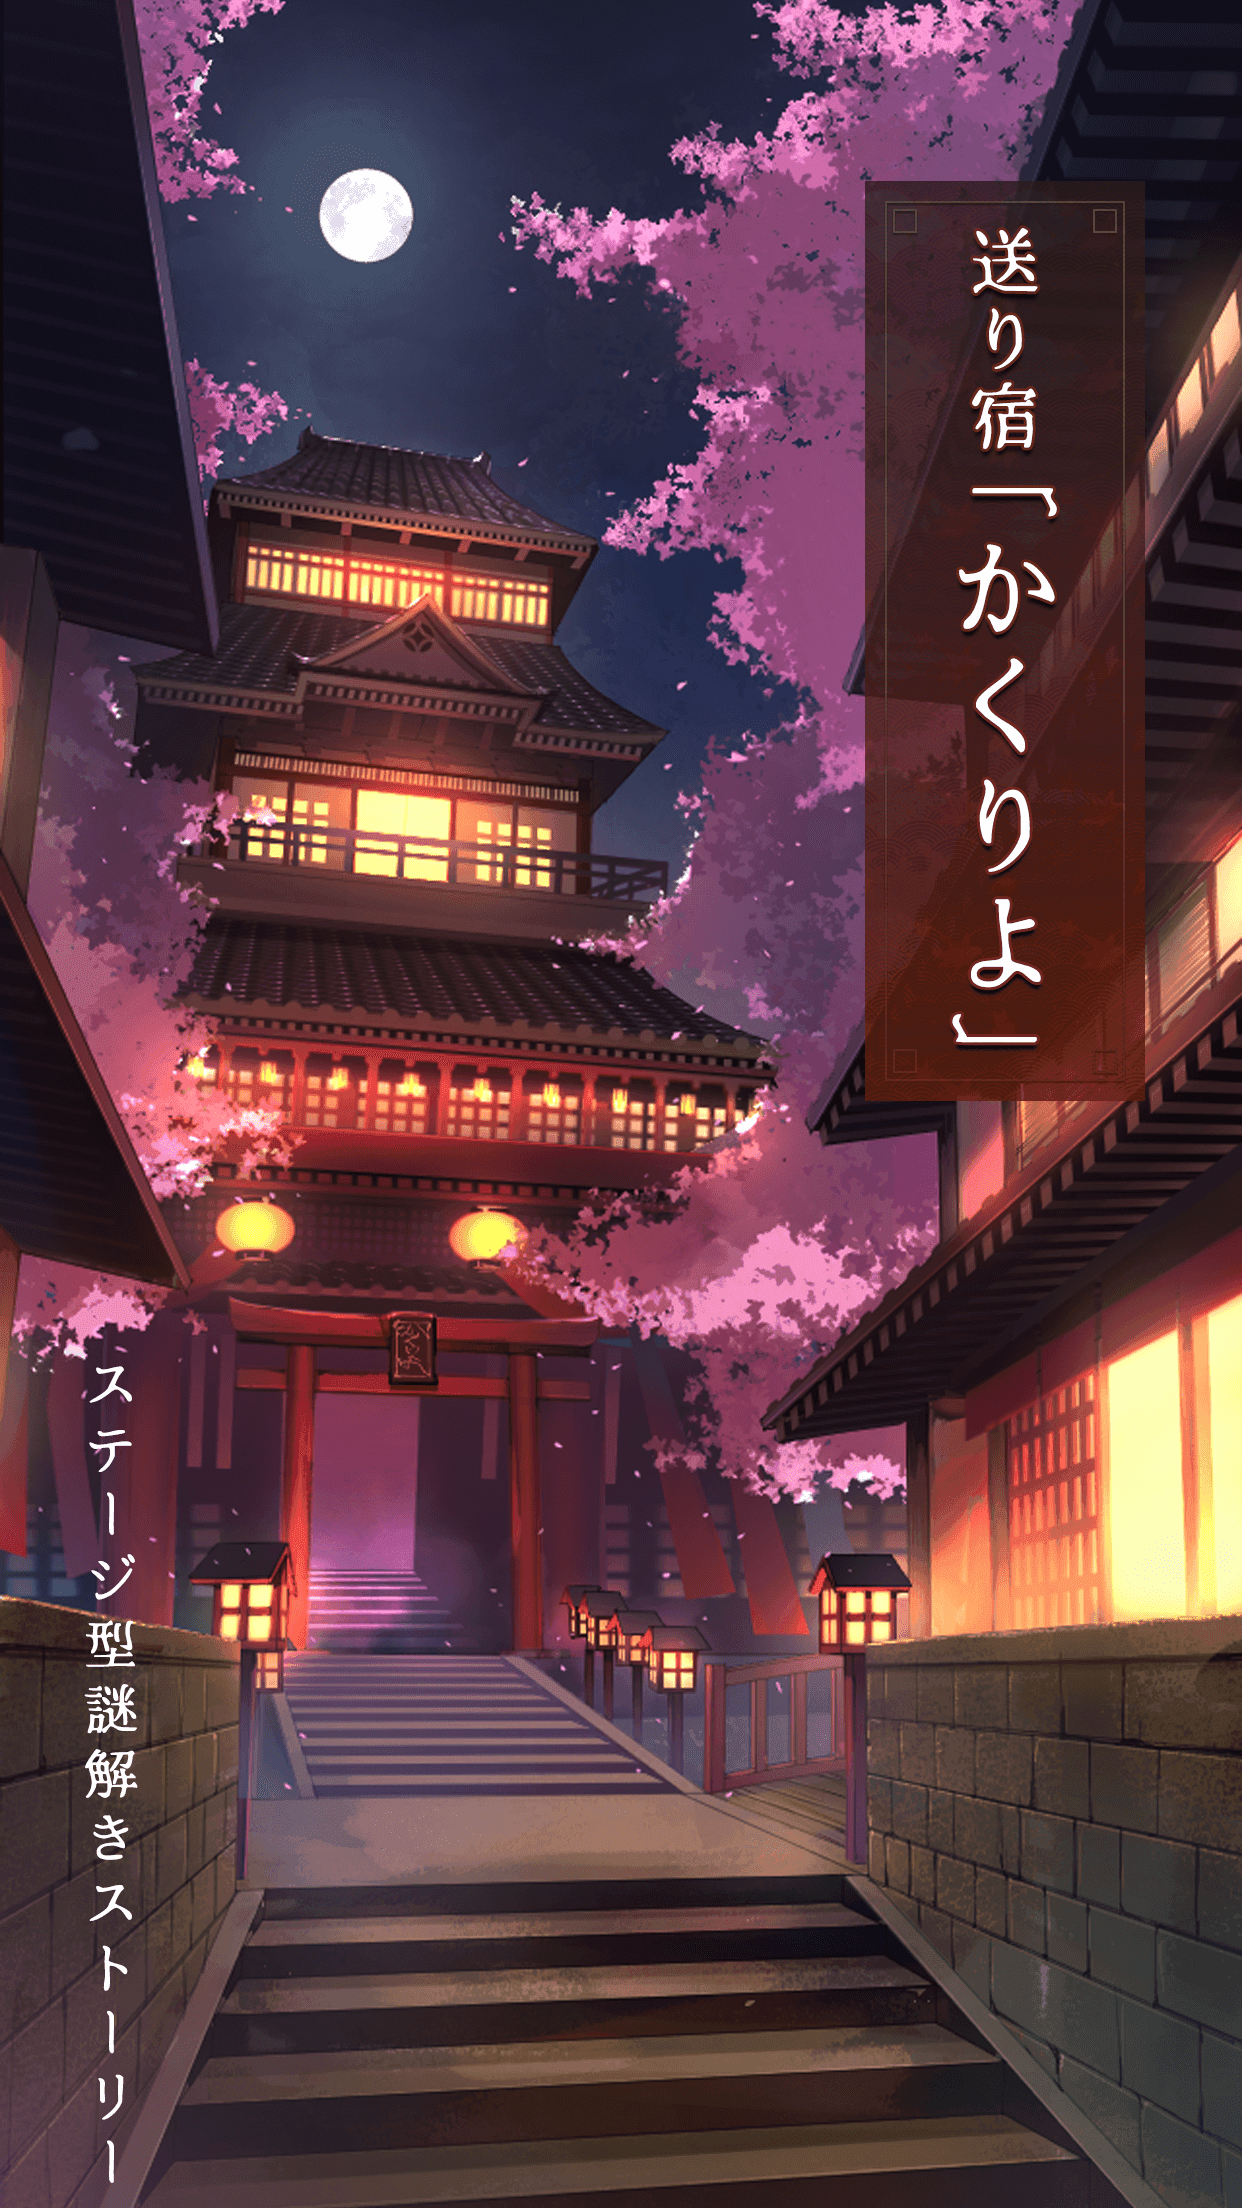 Screenshot 1 of Gửi nhà trọ "Kakuriyo" Câu chuyện giải quyết bí ẩn kiểu sân khấu 1.6.0